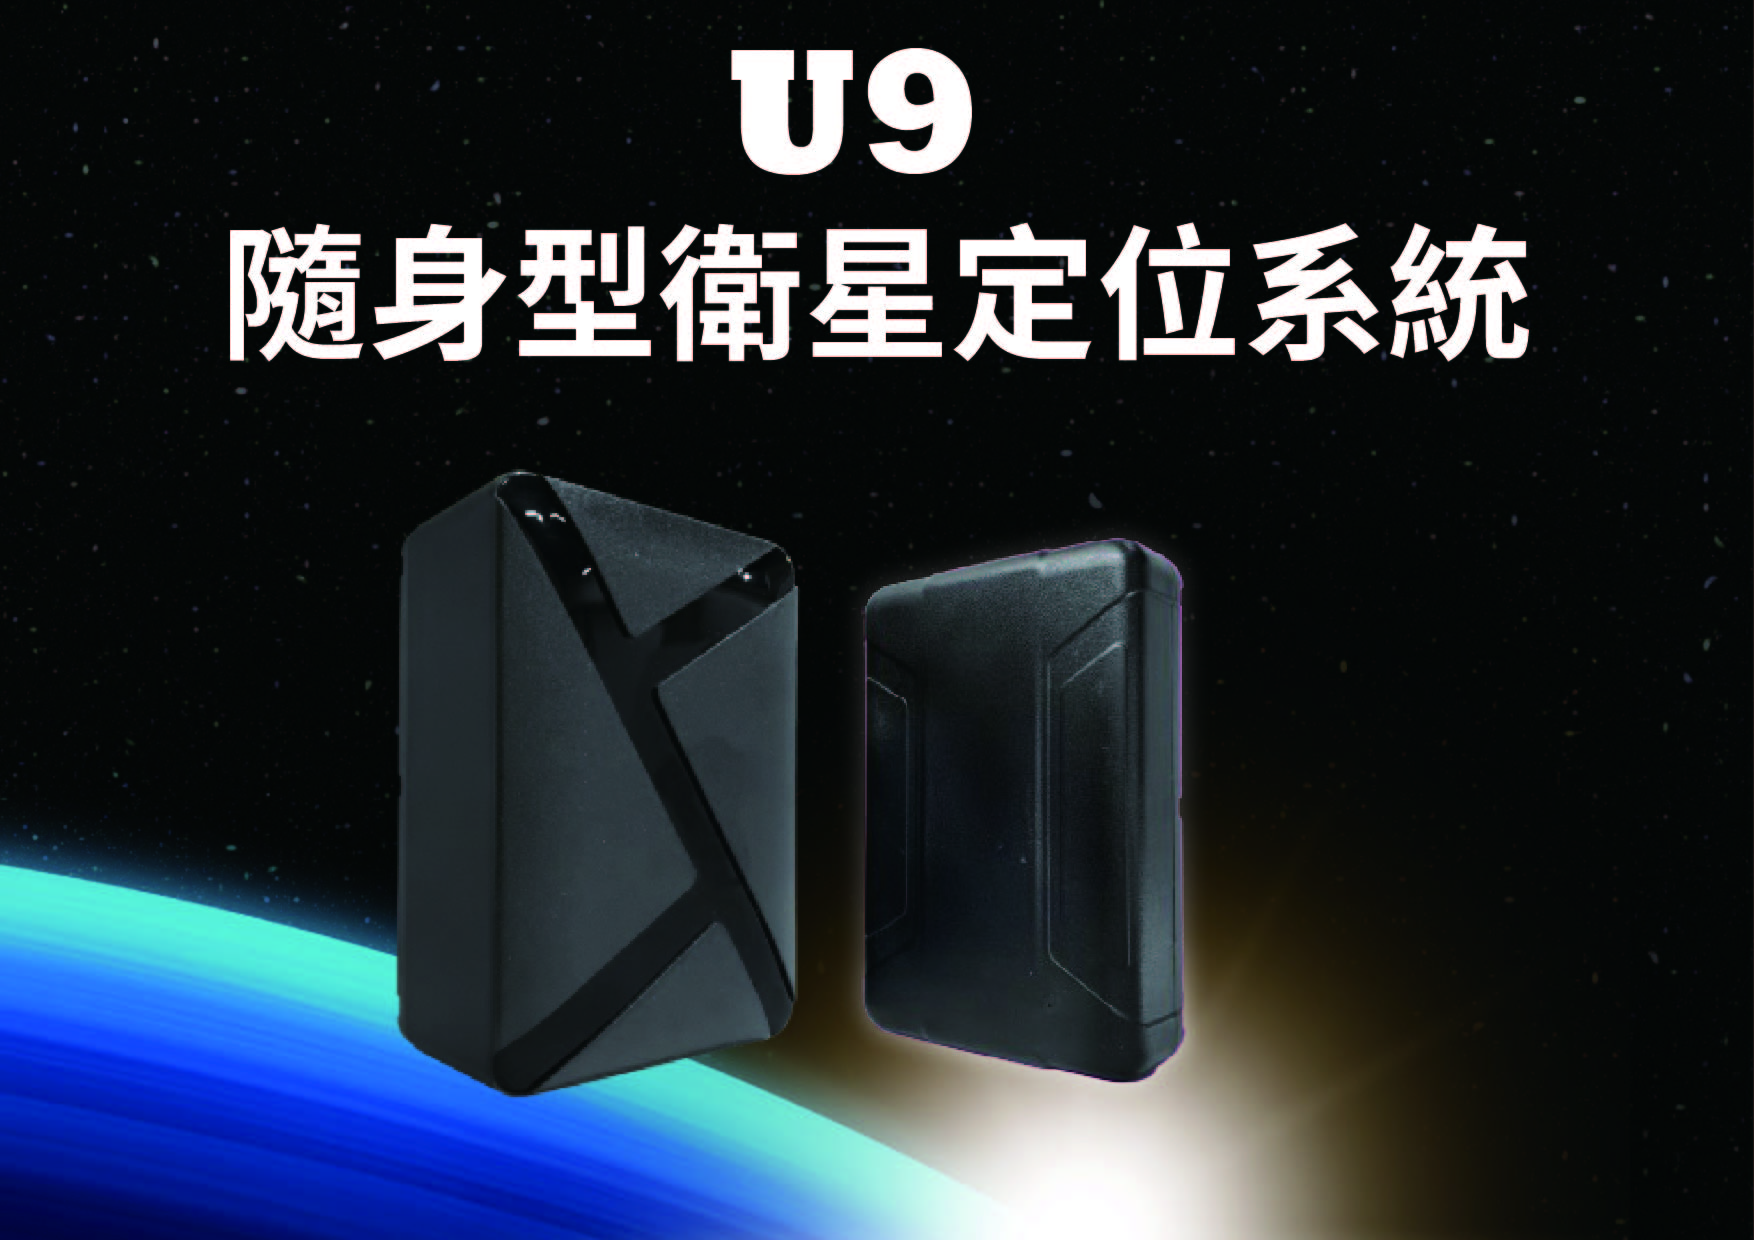 U9 隨身型衛星定位系統